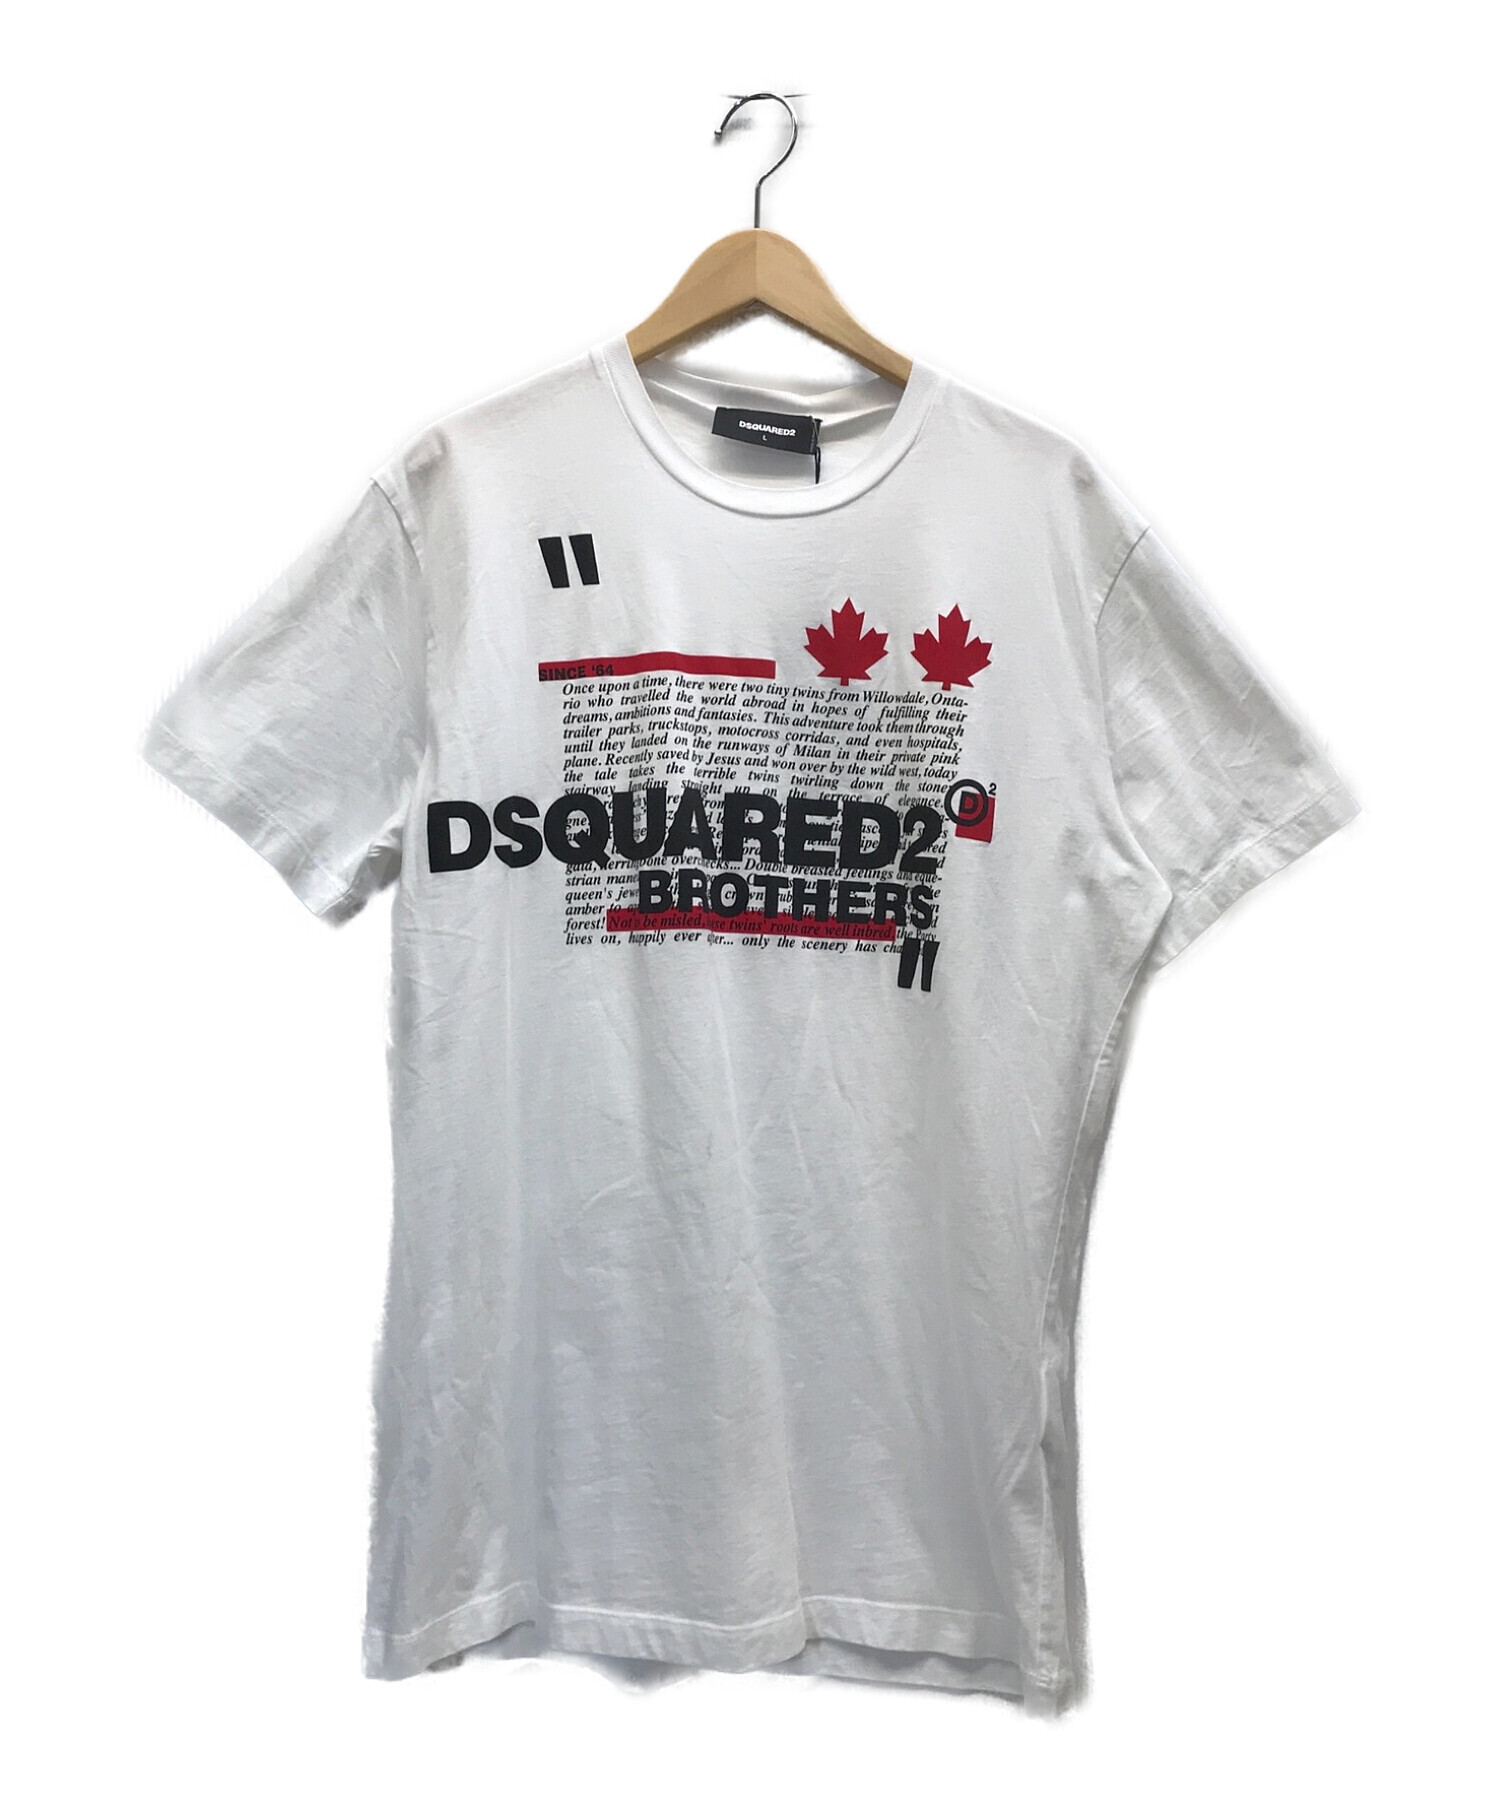 DSQUARED2 (ディースクエアード) Brothers Tシャツ ブラザーズTシャツ ホワイト サイズ:L